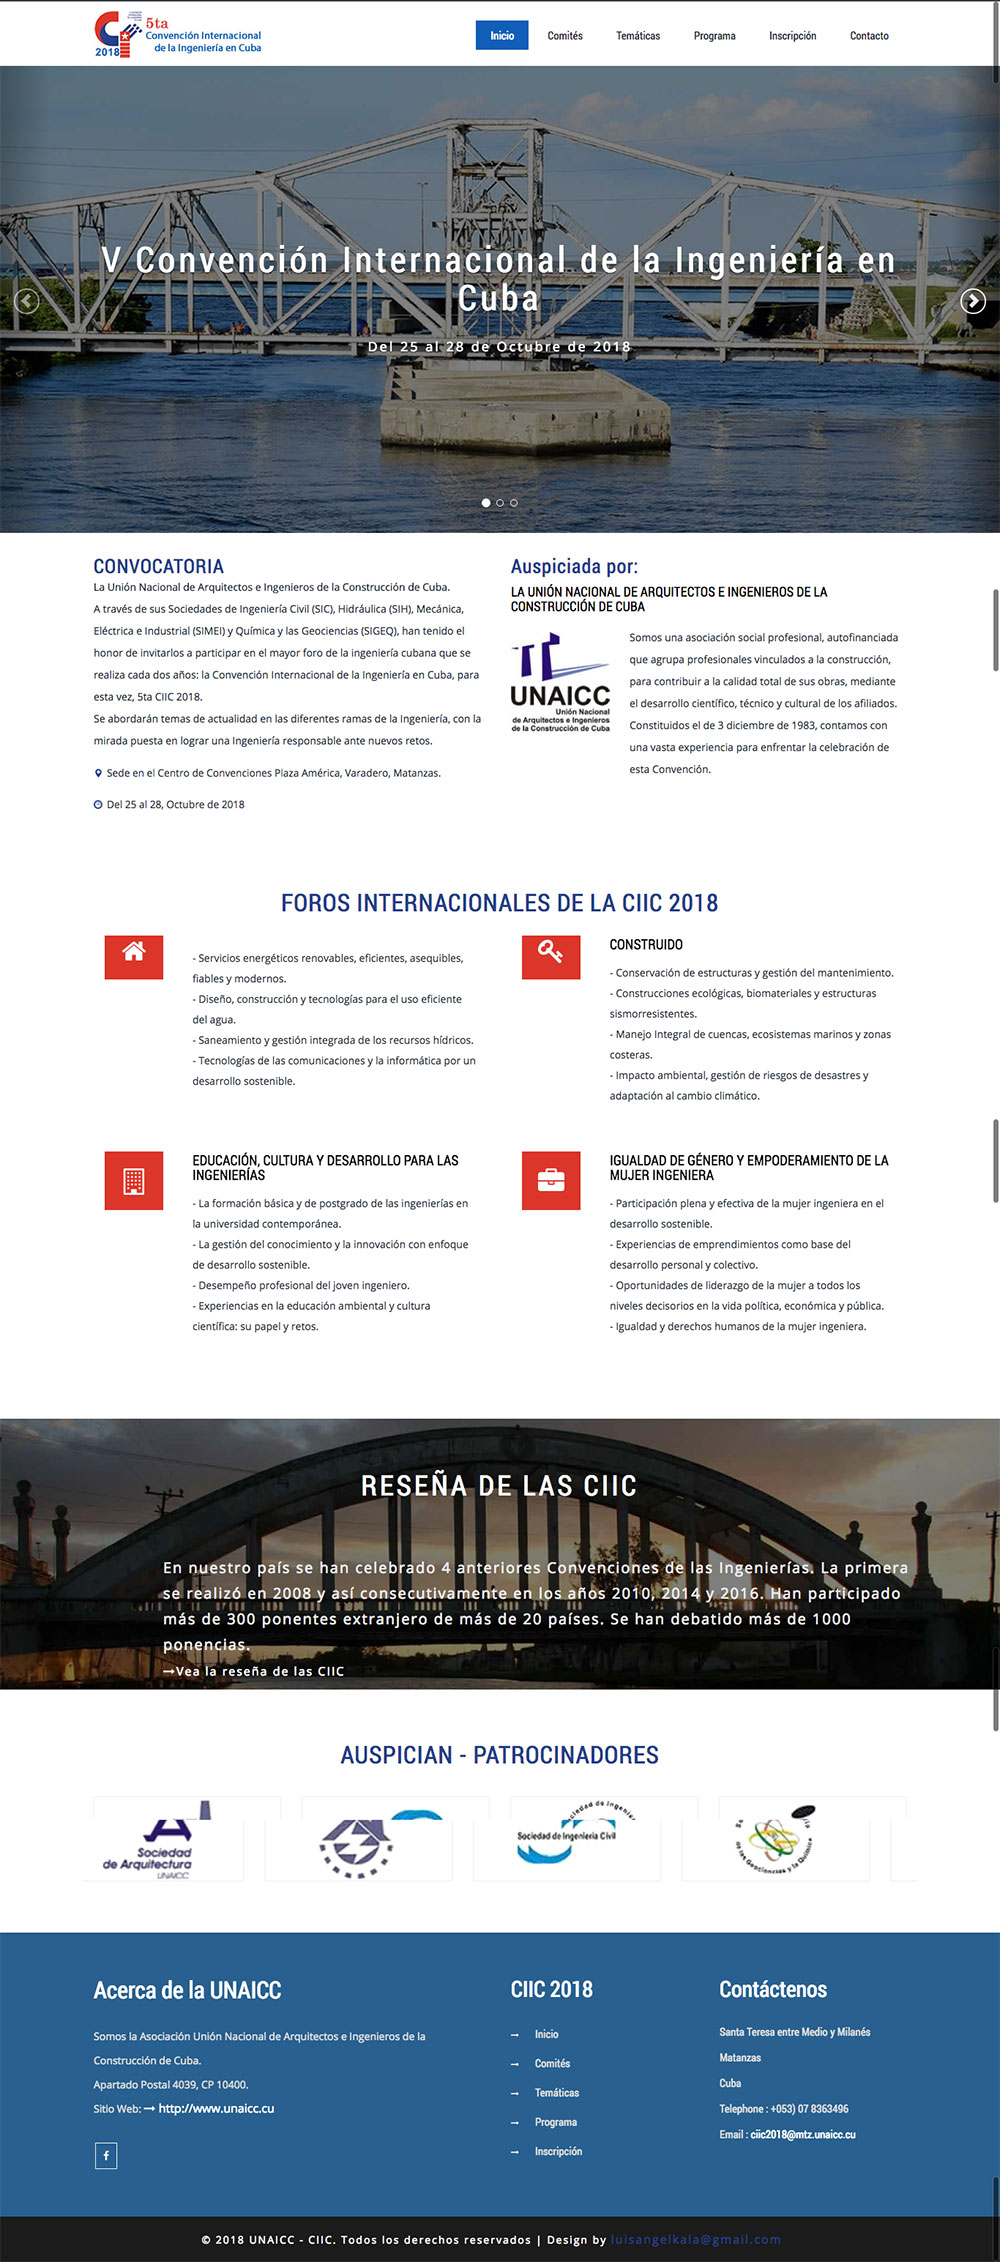 CONVENCION-INTERNACIONAL-DE-LA-INGENIERIA-EN-CUBA-CIIC-2018.jpg